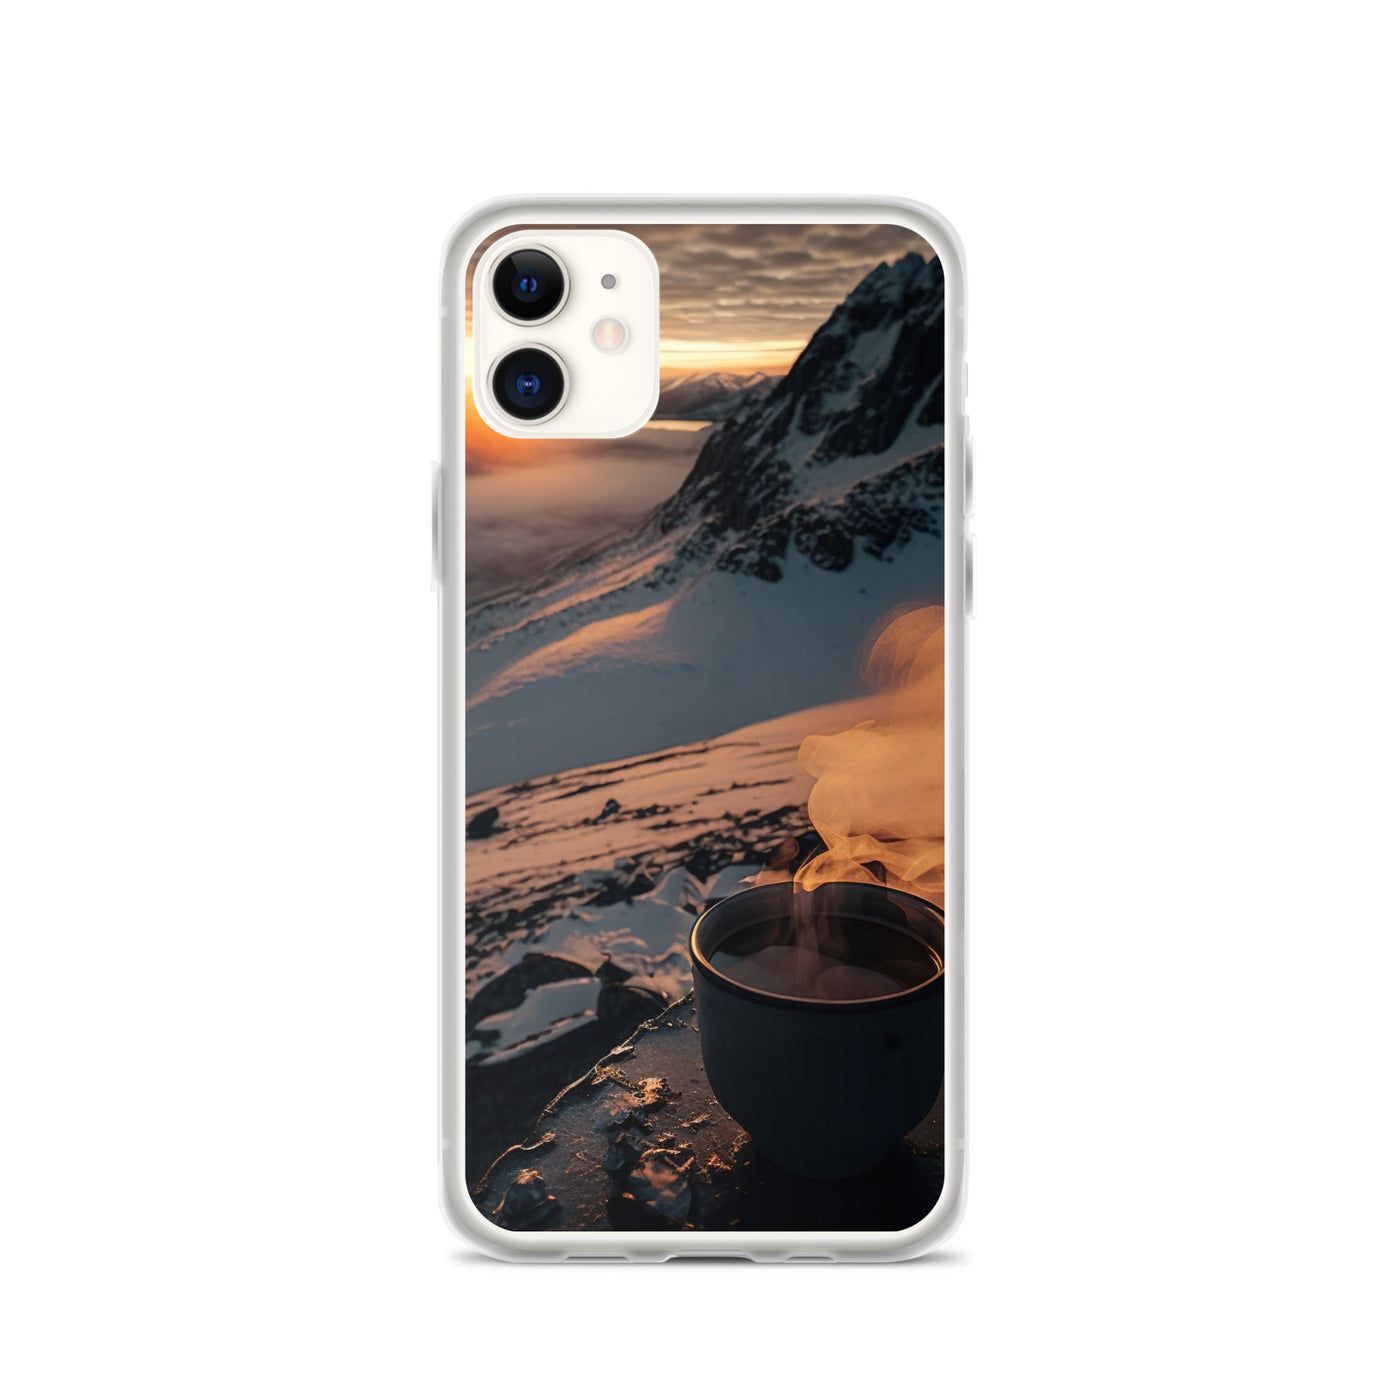 Heißer Kaffee auf einem schneebedeckten Berg - iPhone Schutzhülle (durchsichtig) berge xxx iPhone 11